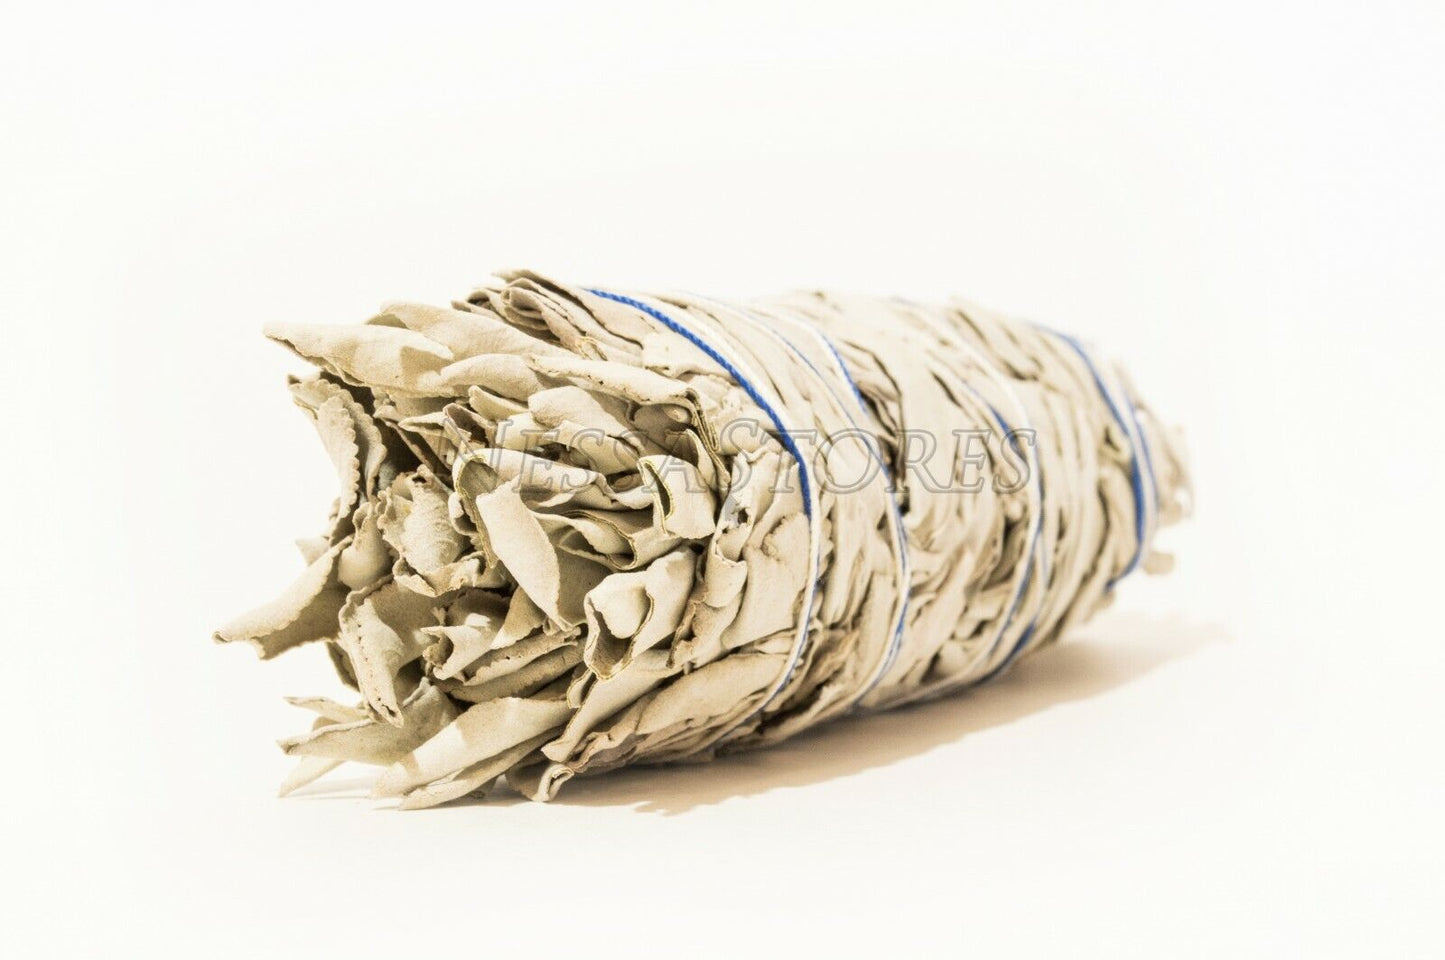 NessaStores California White Sage Smudge Incense 7"-8" Bundle (4 pcs) #JC-9